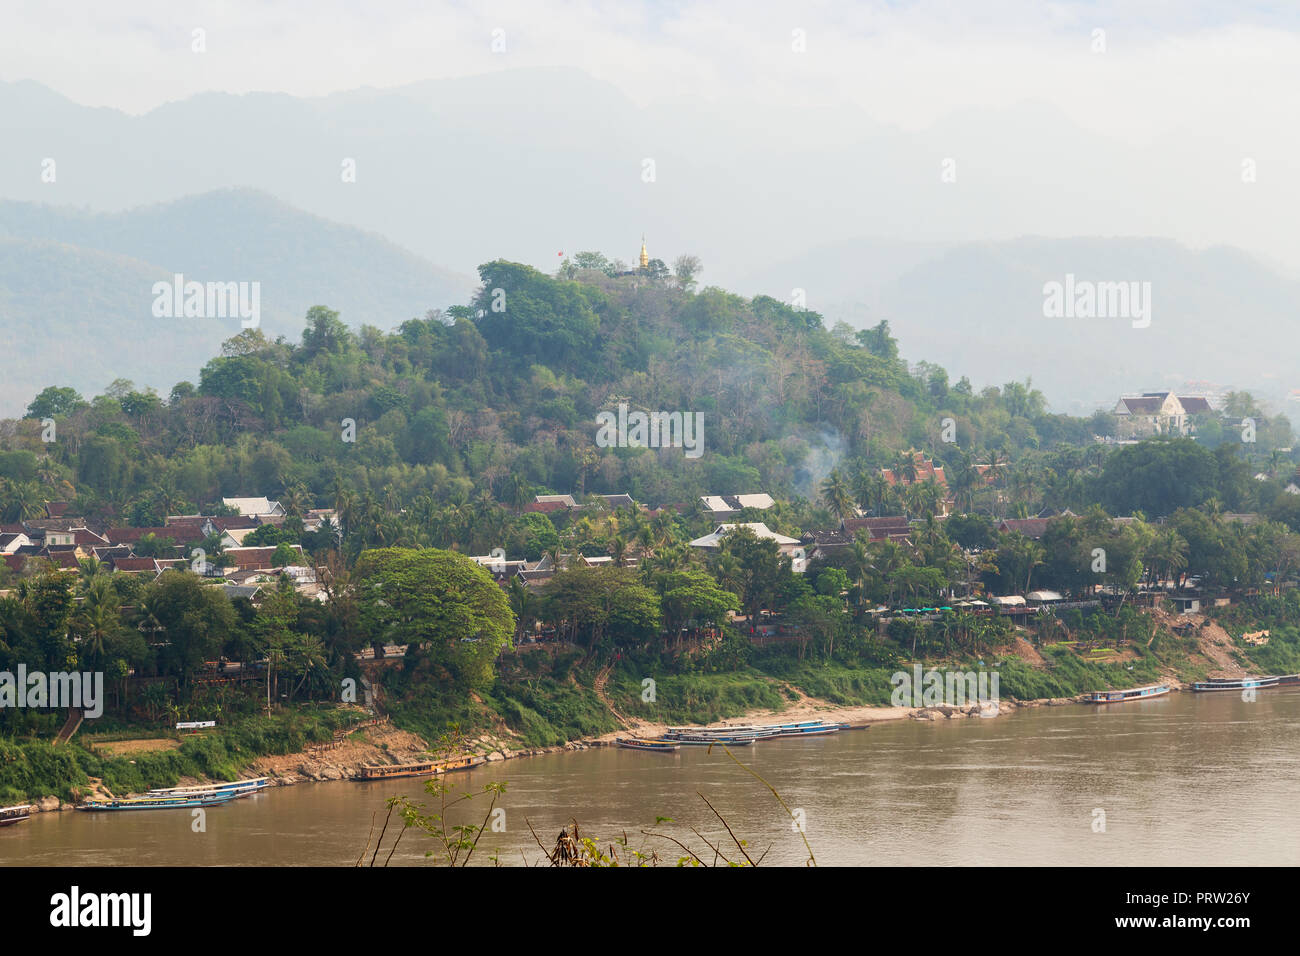 Bateaux amarrés sur le fleuve Mékong, ville de Luang Prabang, le Mont Phousi (Phou Si, Phusi, Phu Si) et les montagnes en arrière-plan à Luang Prabang, Laos. Banque D'Images